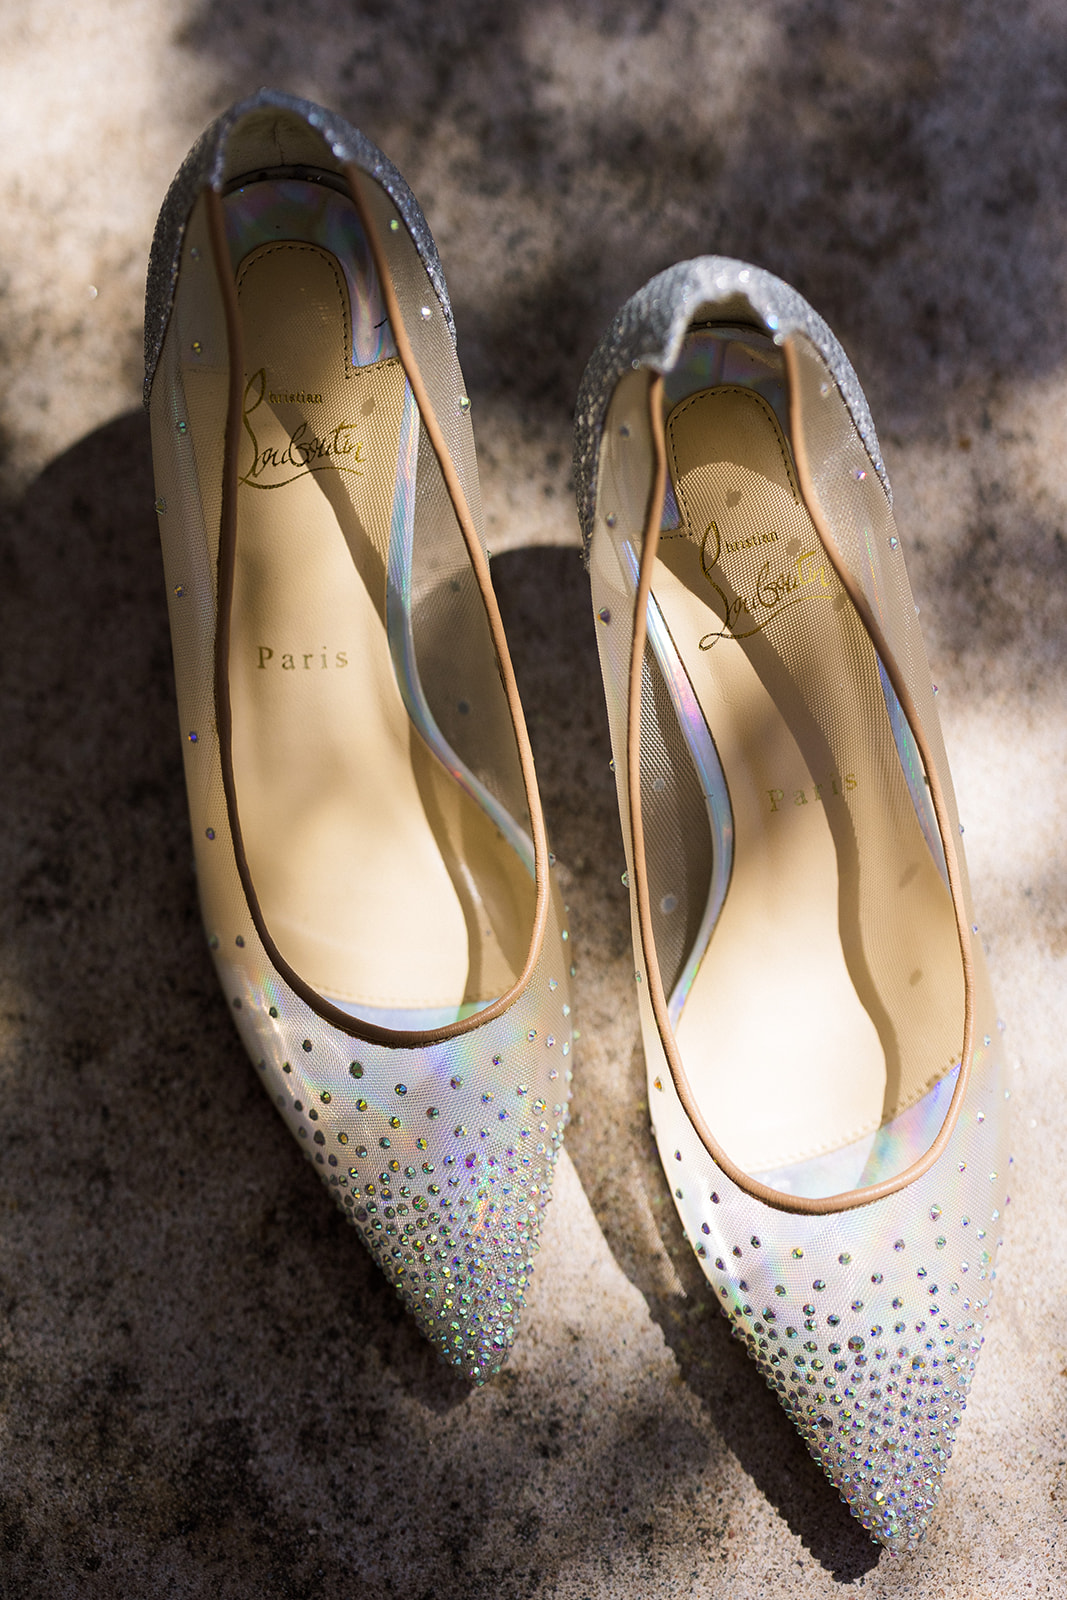 Bride's sheer heels with sequins.